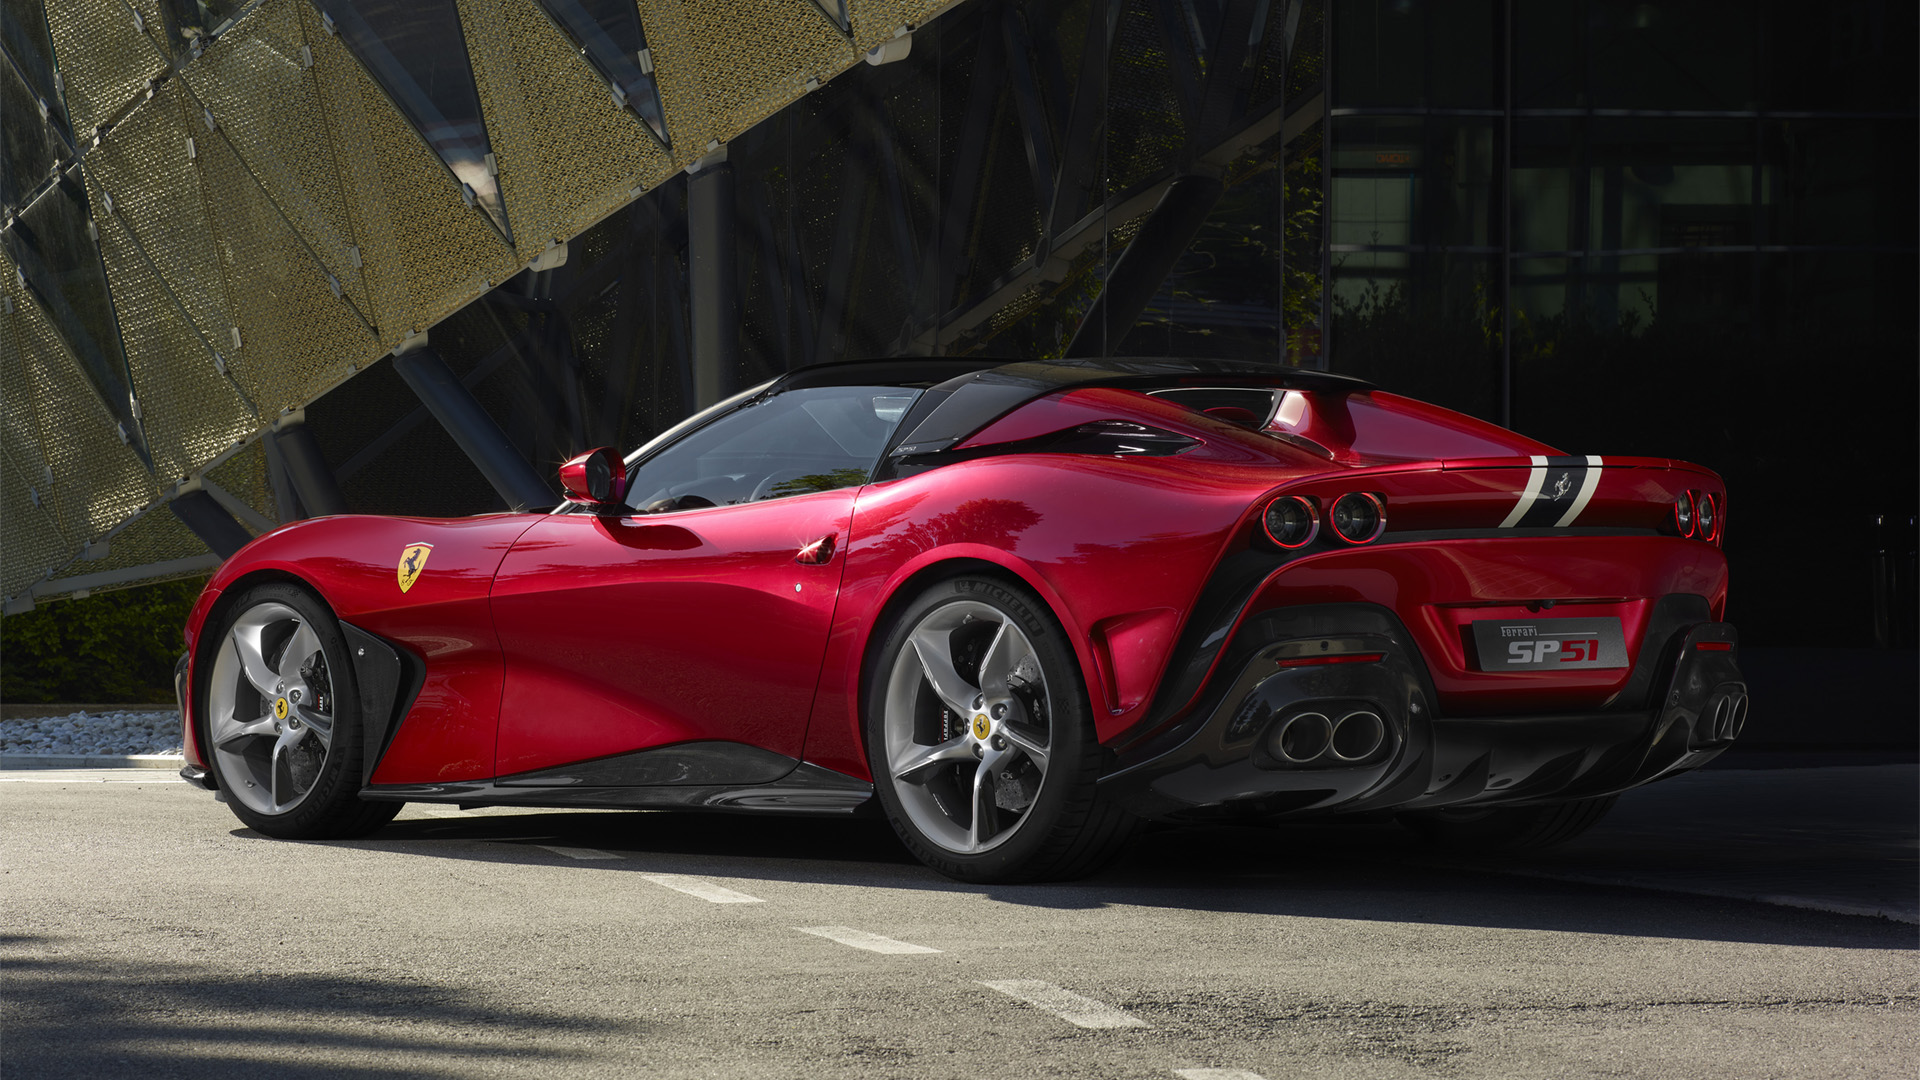 El diseño de la parte trasera de este Ferrari SP51 es probablemente el más logrado, con una disposición de formas muy elegantes y elaboradas